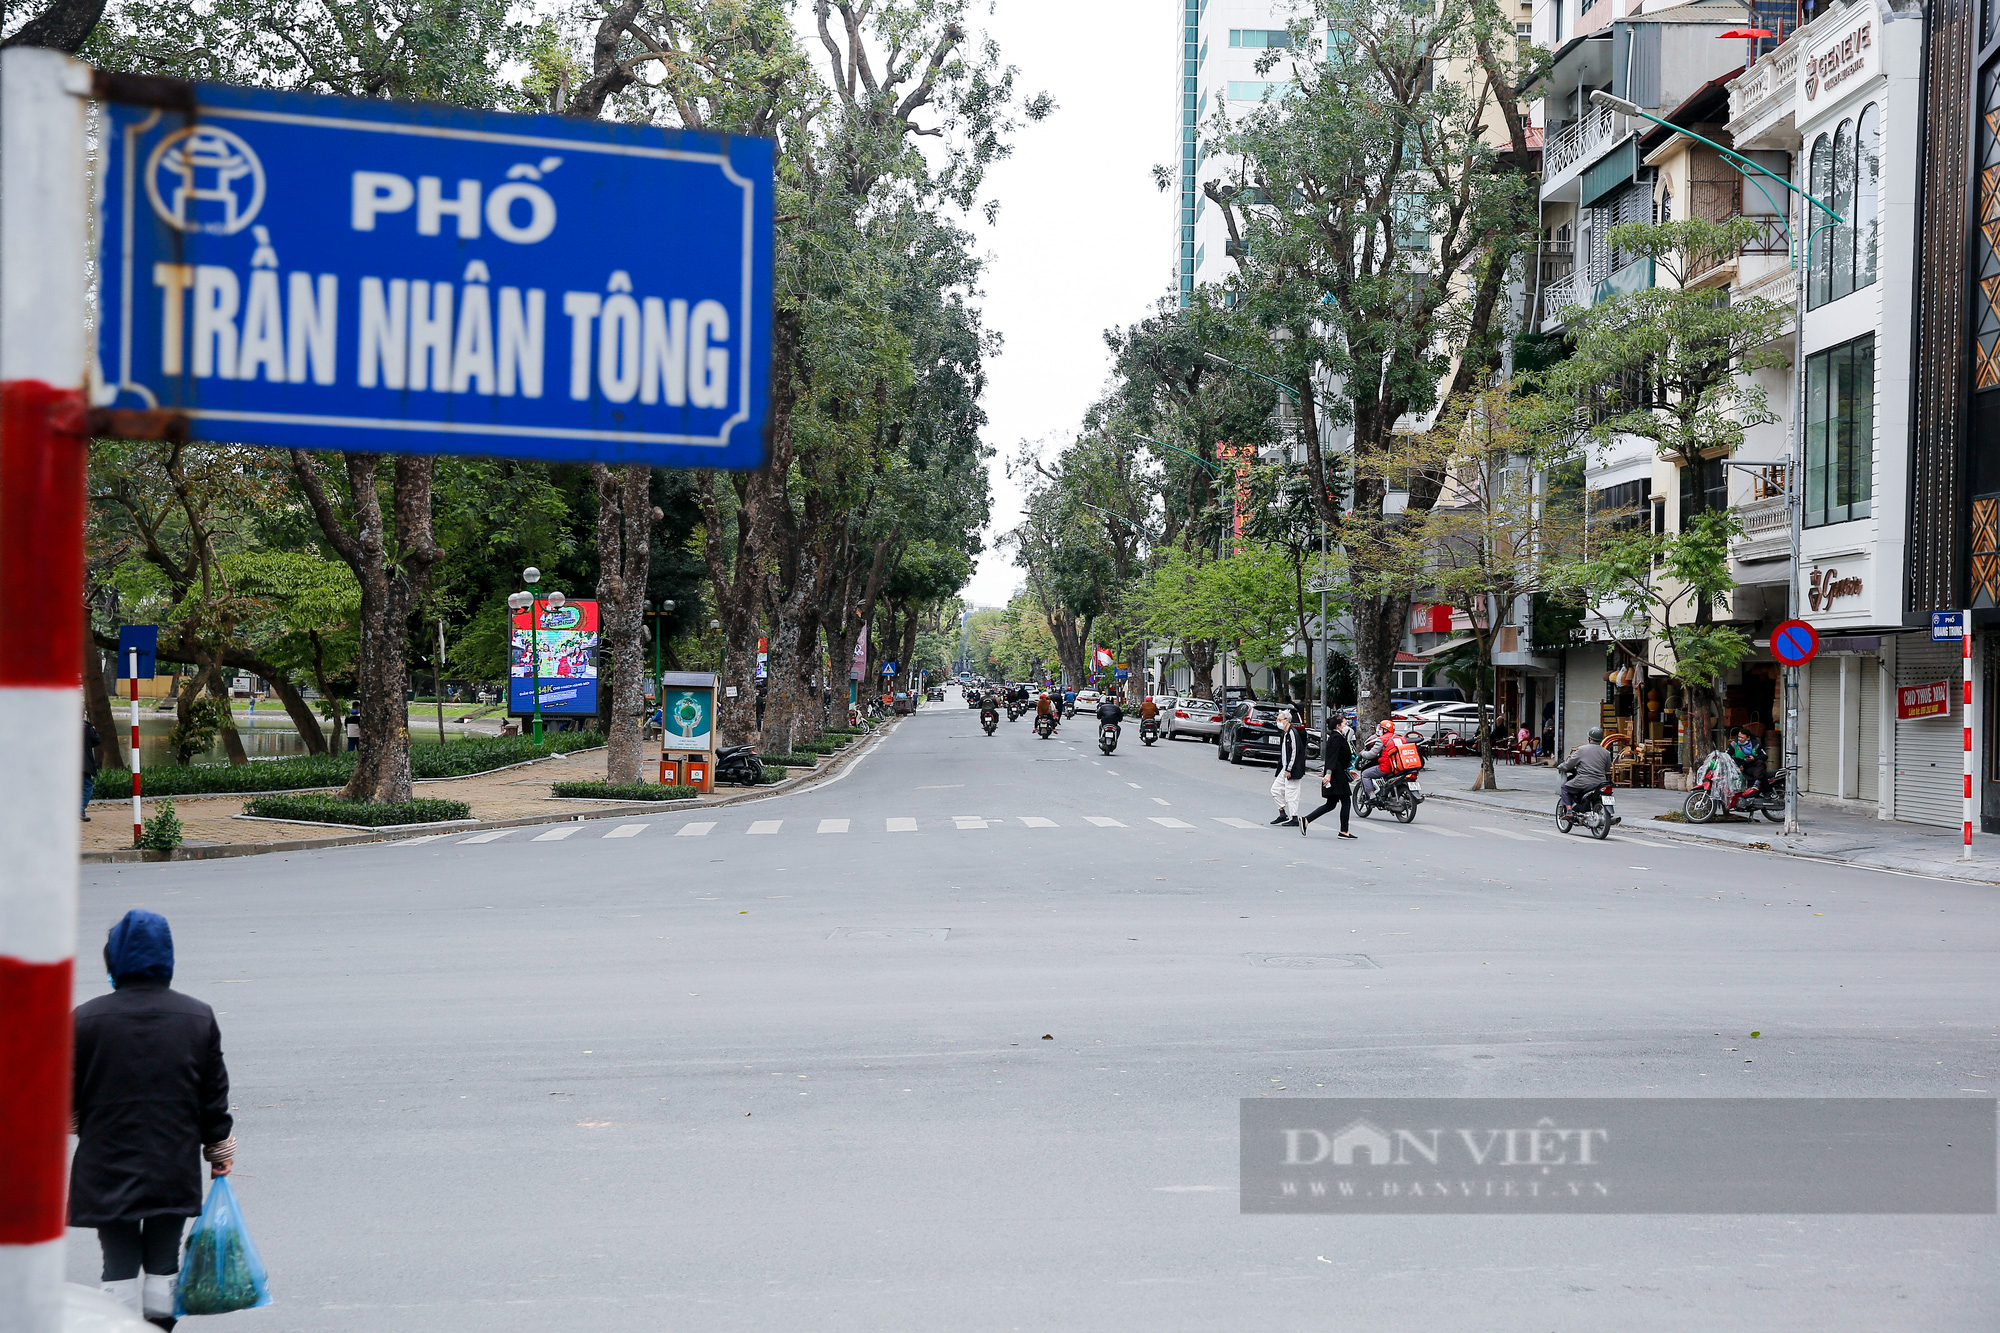 Cận cảnh khu vực được đề xuất khai thác làm phố đi bộ mới của Hà Nội - Ảnh 2.